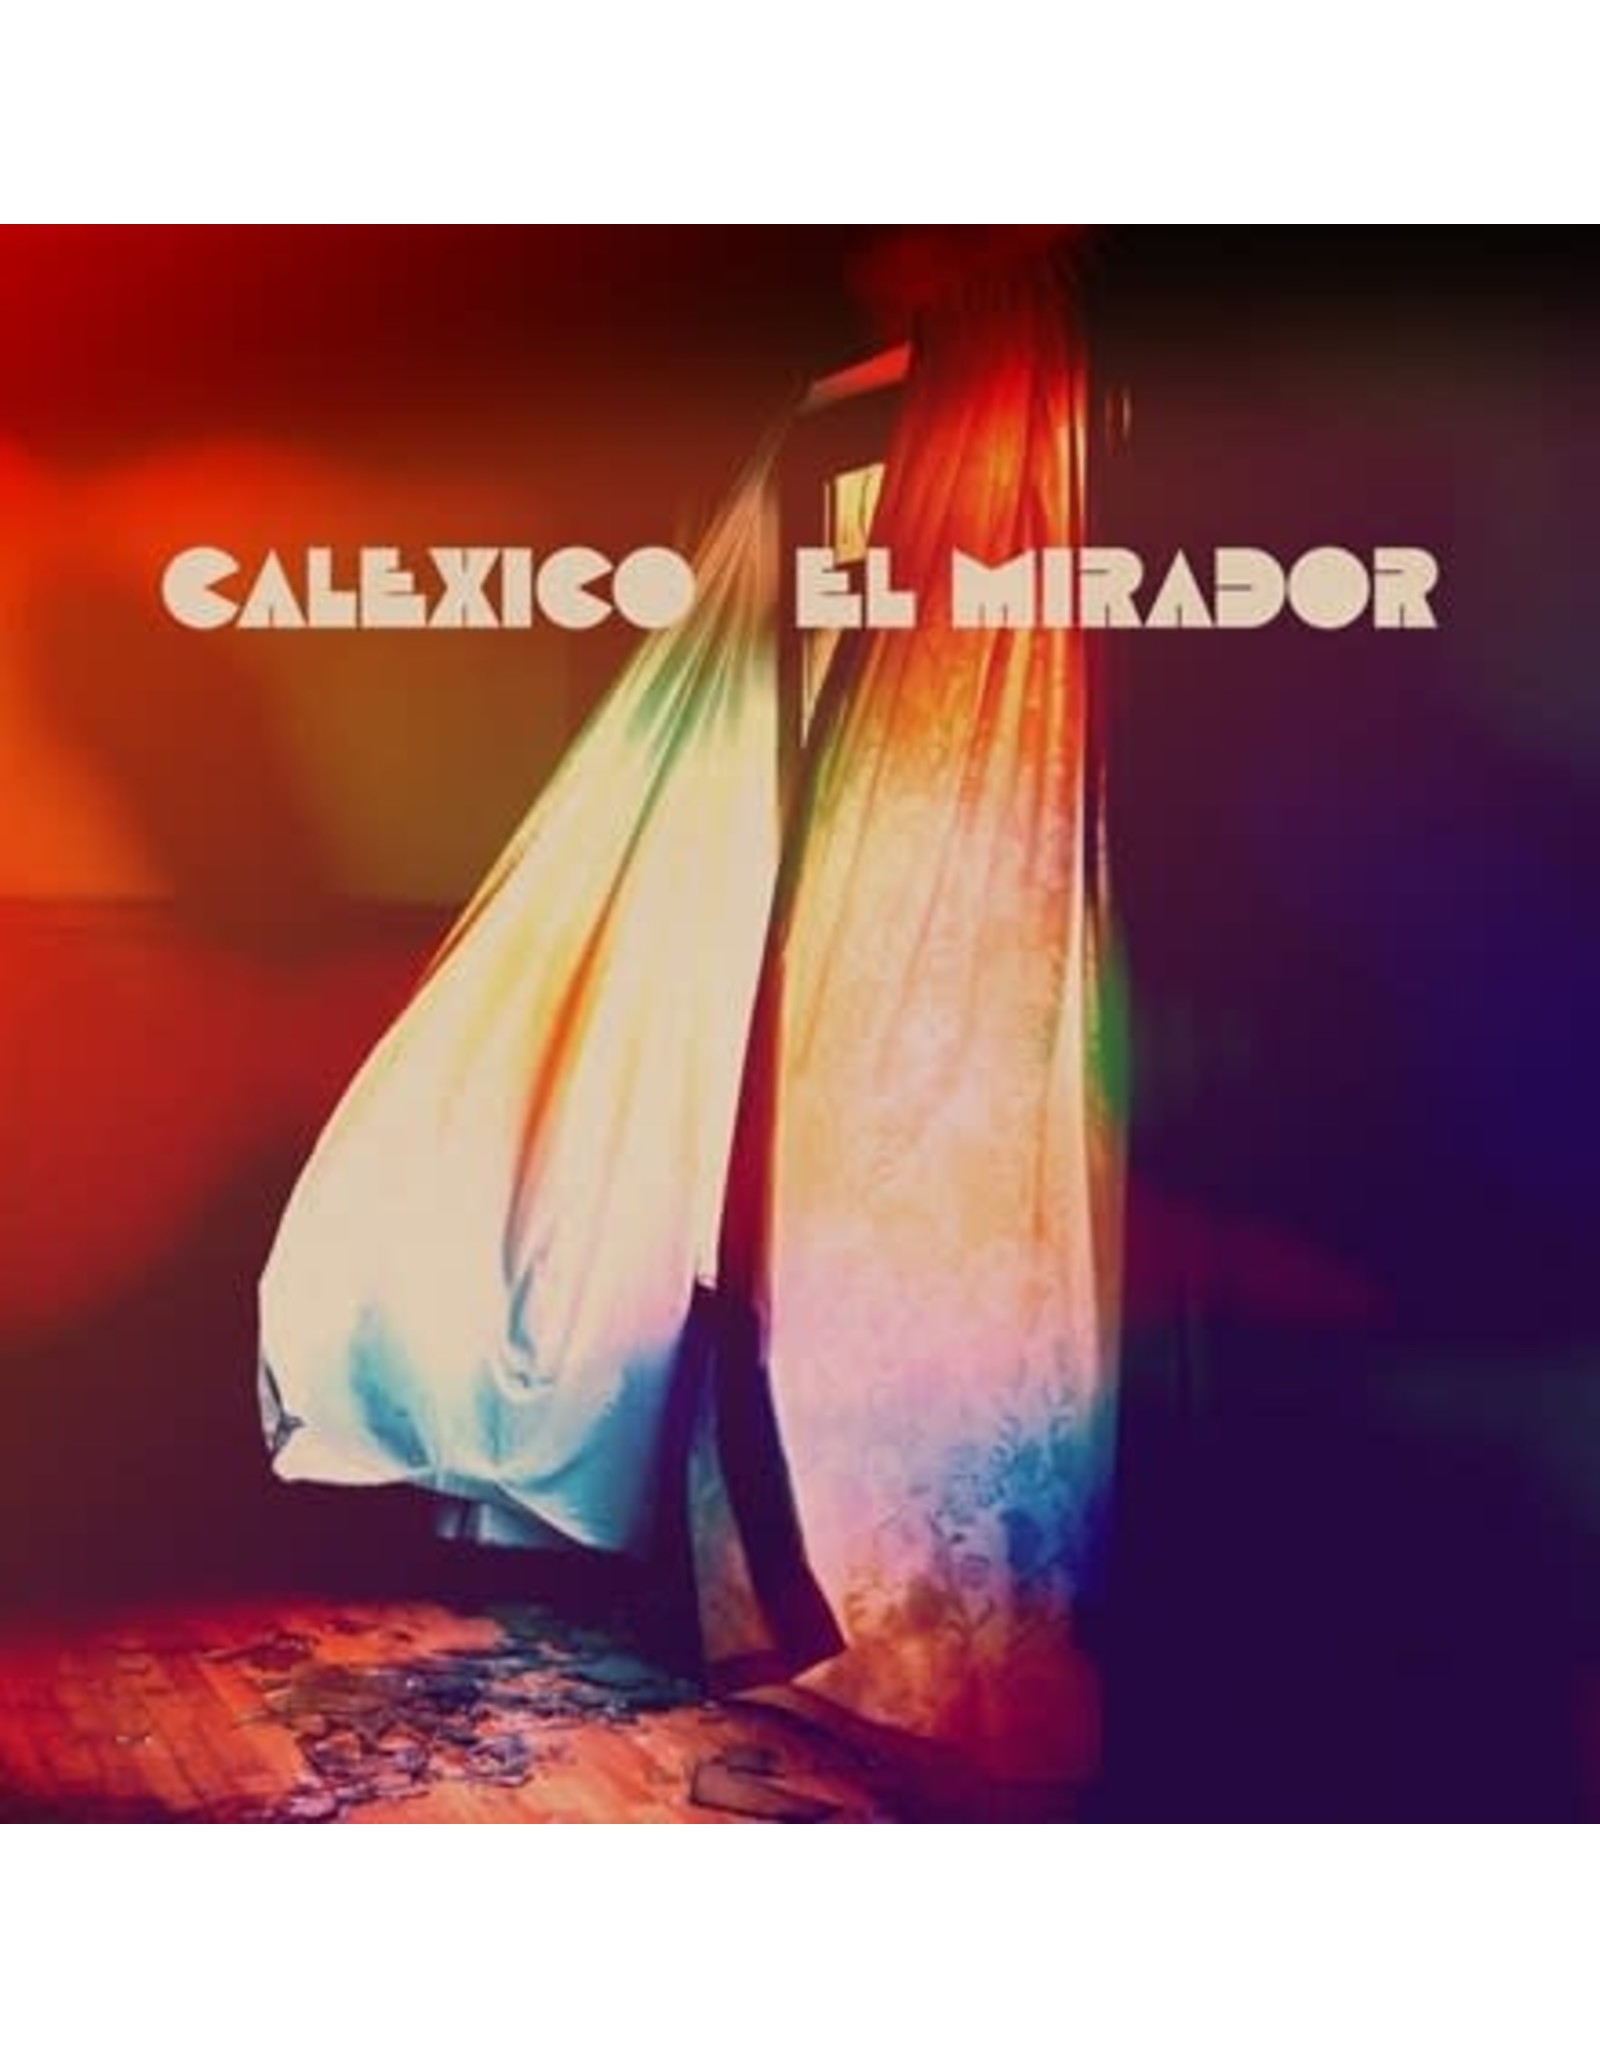 Anti Calexico: El Mirador (indie shop edition/gold) LP